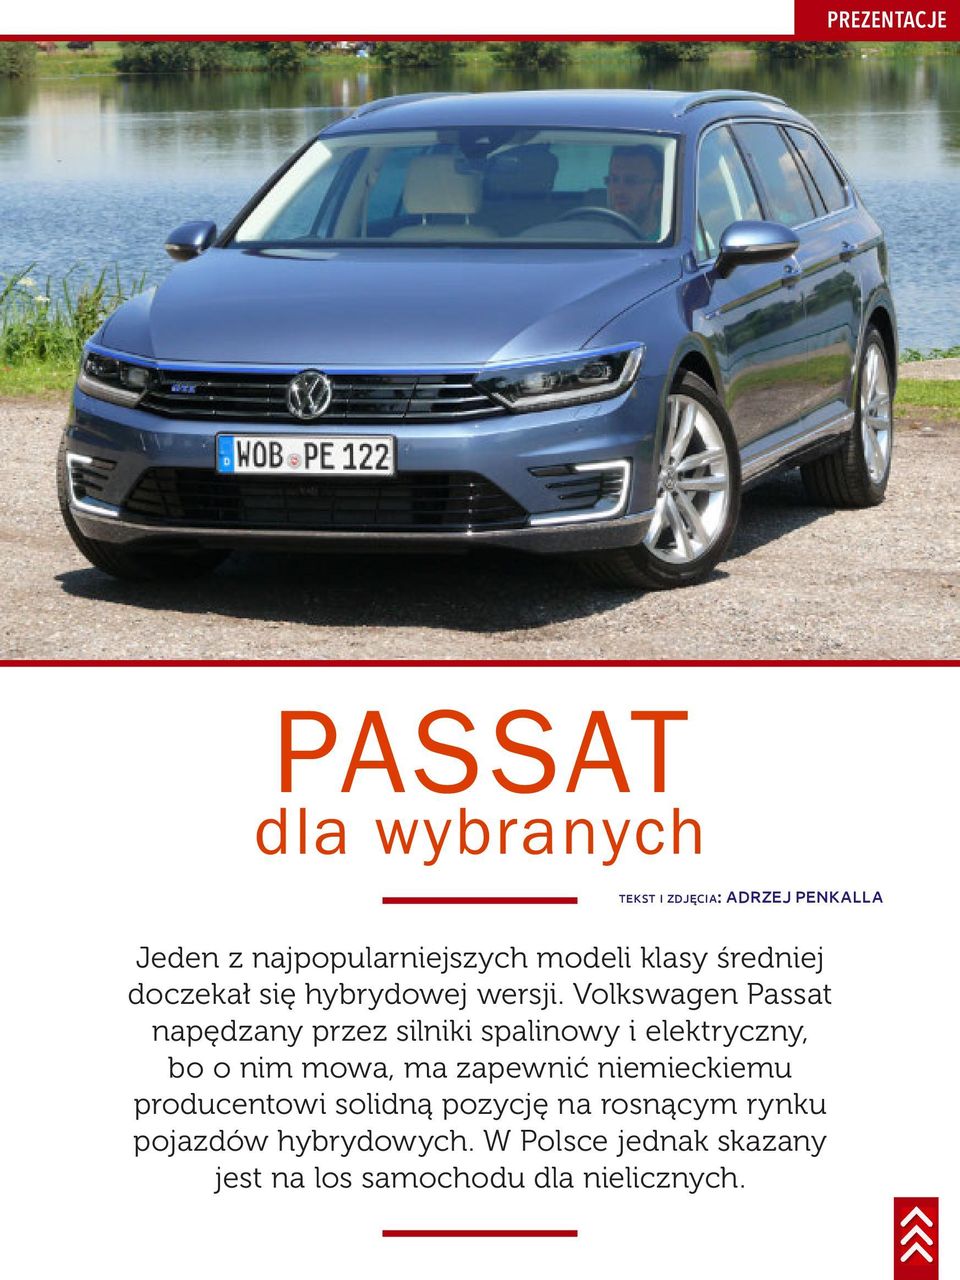 Volkswagen Passat napędzany przez silniki spalinowy i elektryczny, bo o nim mowa, ma zapewnić